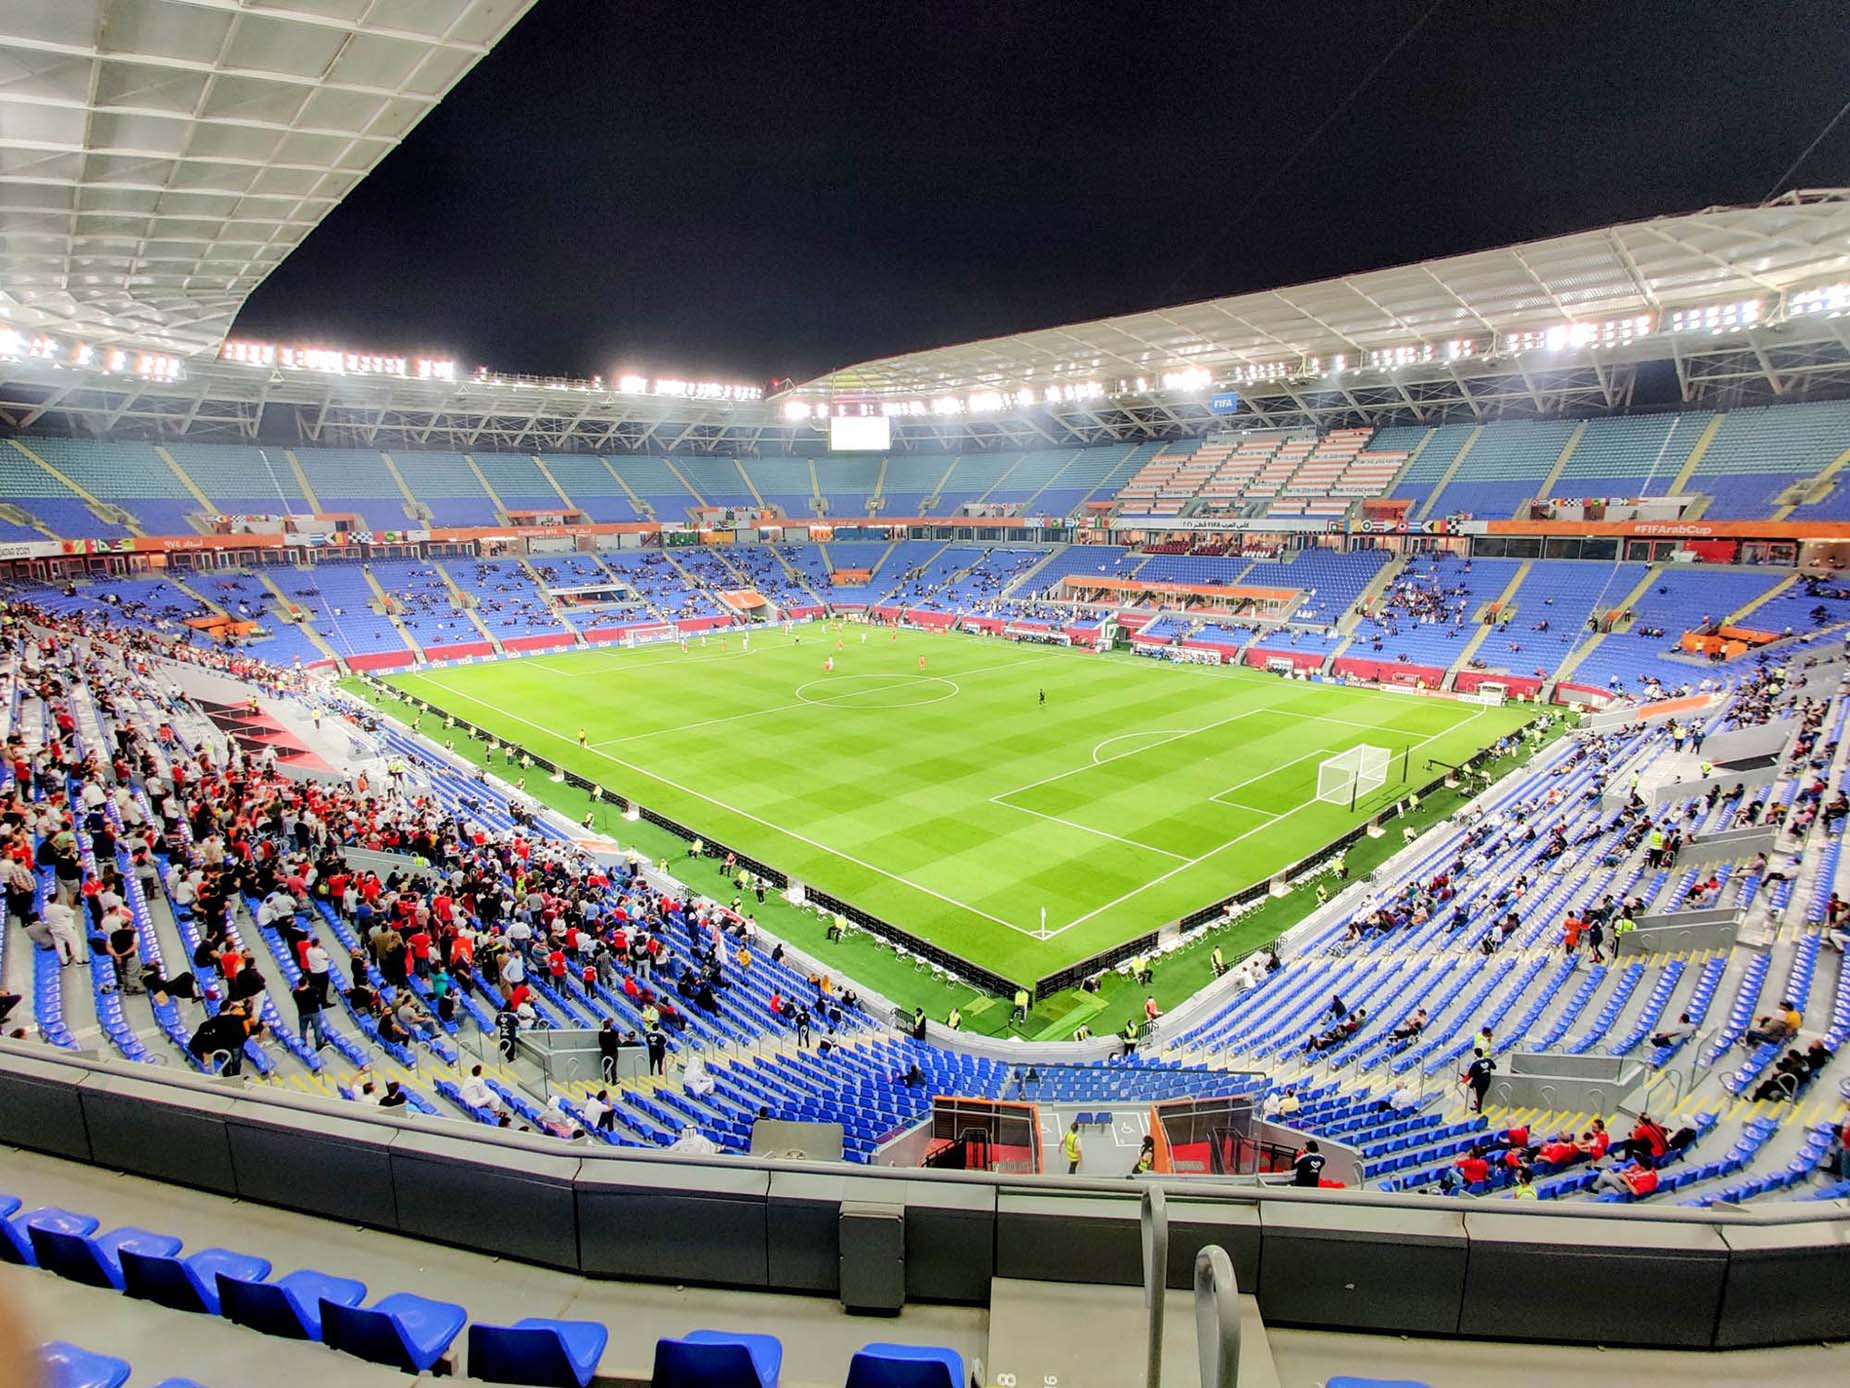 inside-stadium-974-world cup match warm up green grass flood lights